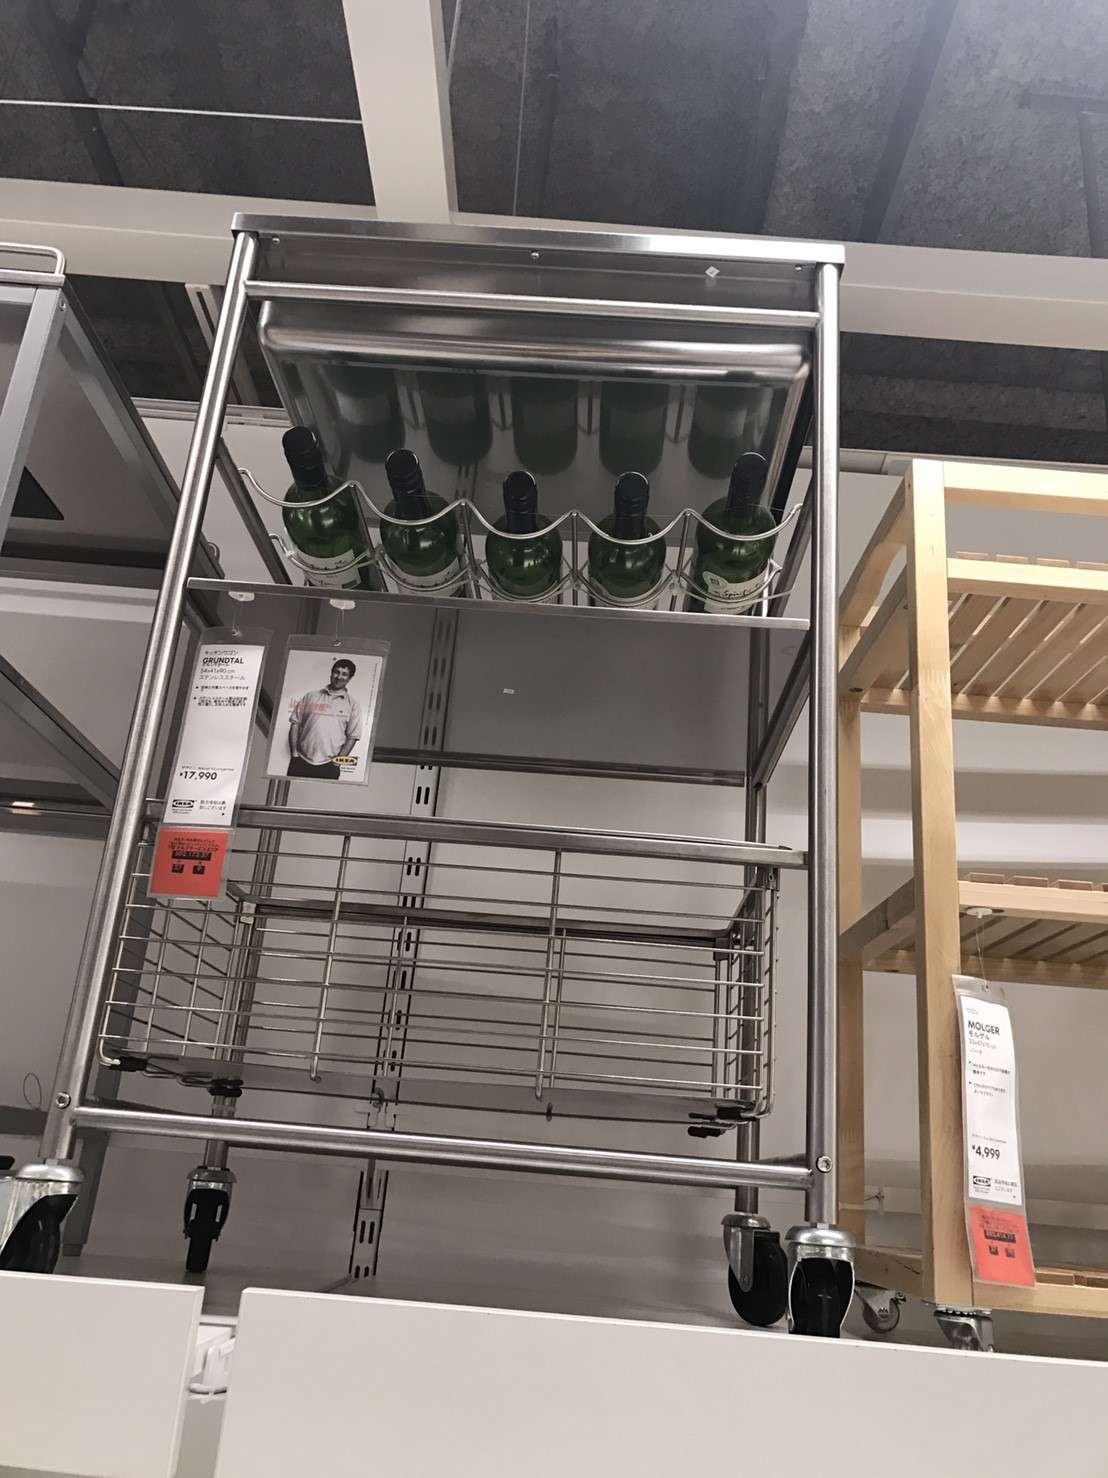 Ikeaのキッチンワゴンで調理カウンターの収納をおしゃれに改善 おすすめ7選を徹底比較 北欧家具ブログ